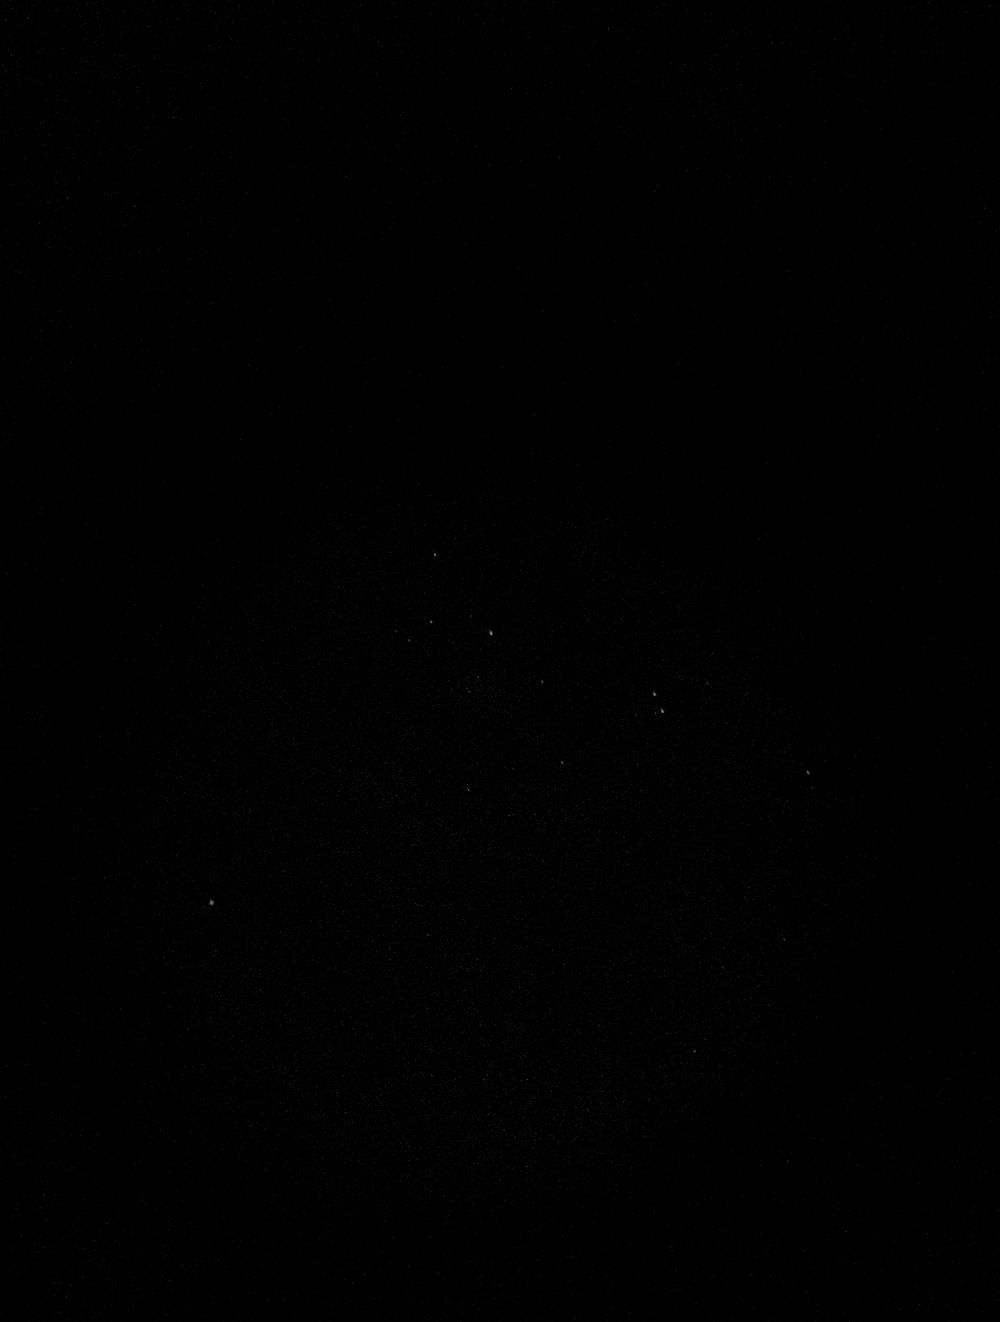 Хи-Аш Персея (NGC 869-884)